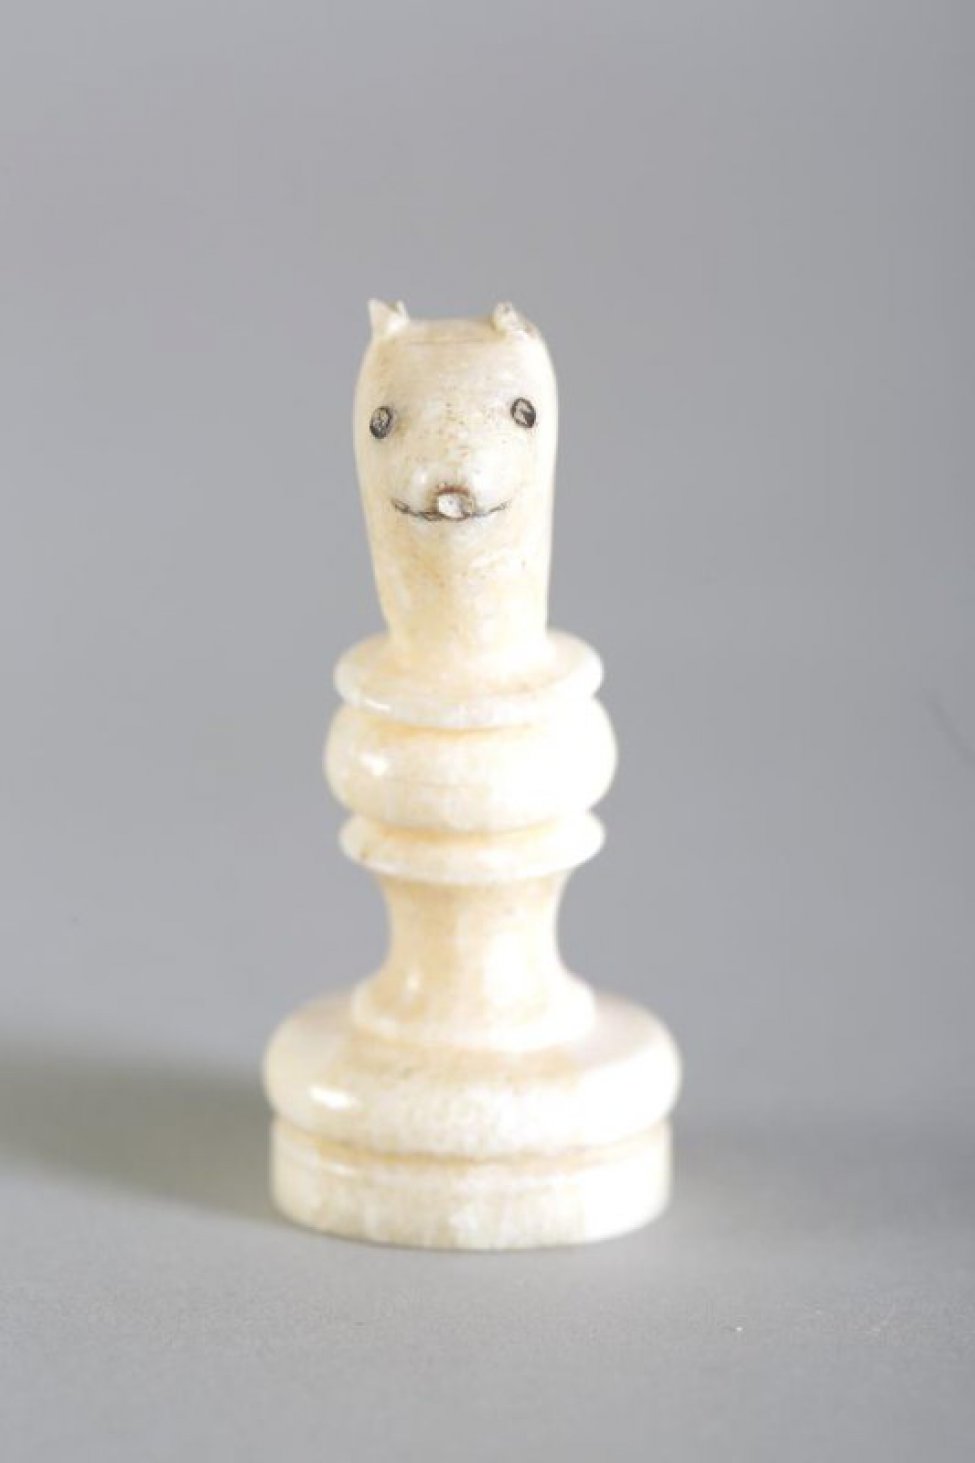 Шахматная фигура белого цвета в виде невысокой профилированной балясины вверху заканчивается головой песца с  отбитыми  ушами. На голове  неглубокой резьбой (процарапыванием) с черной тонировкой обозначены  маленькие круглые глаза, линия рта и кончик носа. Вся фигура выполнена из одного куска бивня.